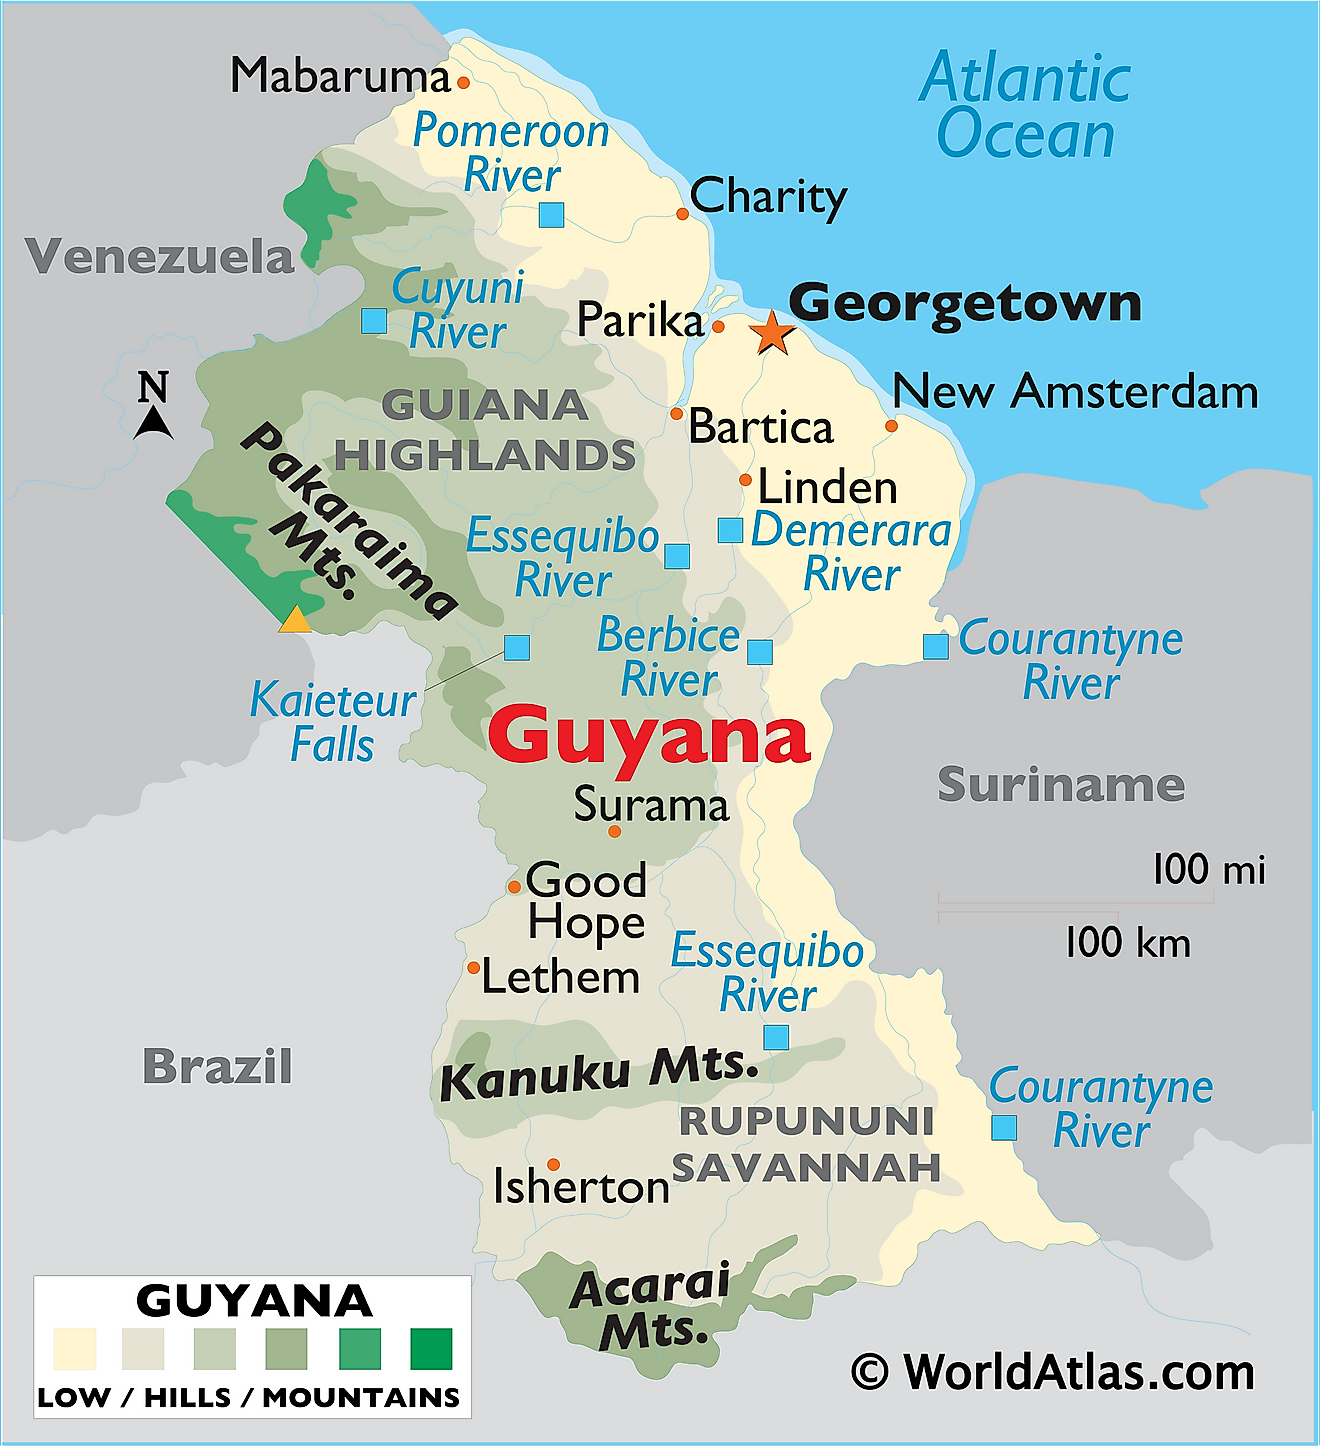 Mapa físico de Guyana que muestra el terreno, las principales cadenas montañosas, ríos, ciudades importantes, países vecinos y más.